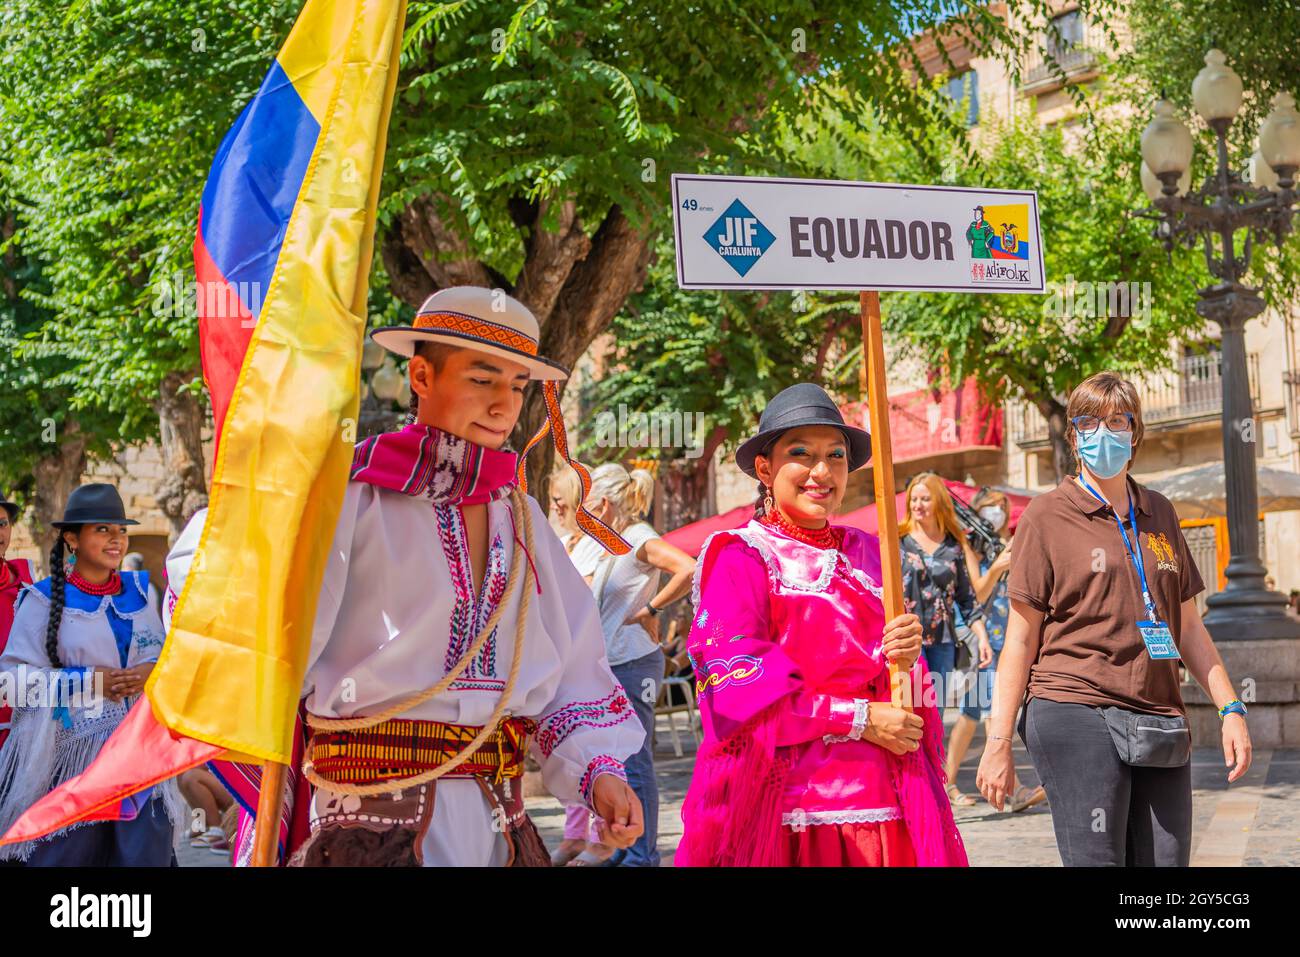 Danseurs folkloriques en Équateur costumes au festival folklorique Maire de Montblanc en Espagne Banque D'Images